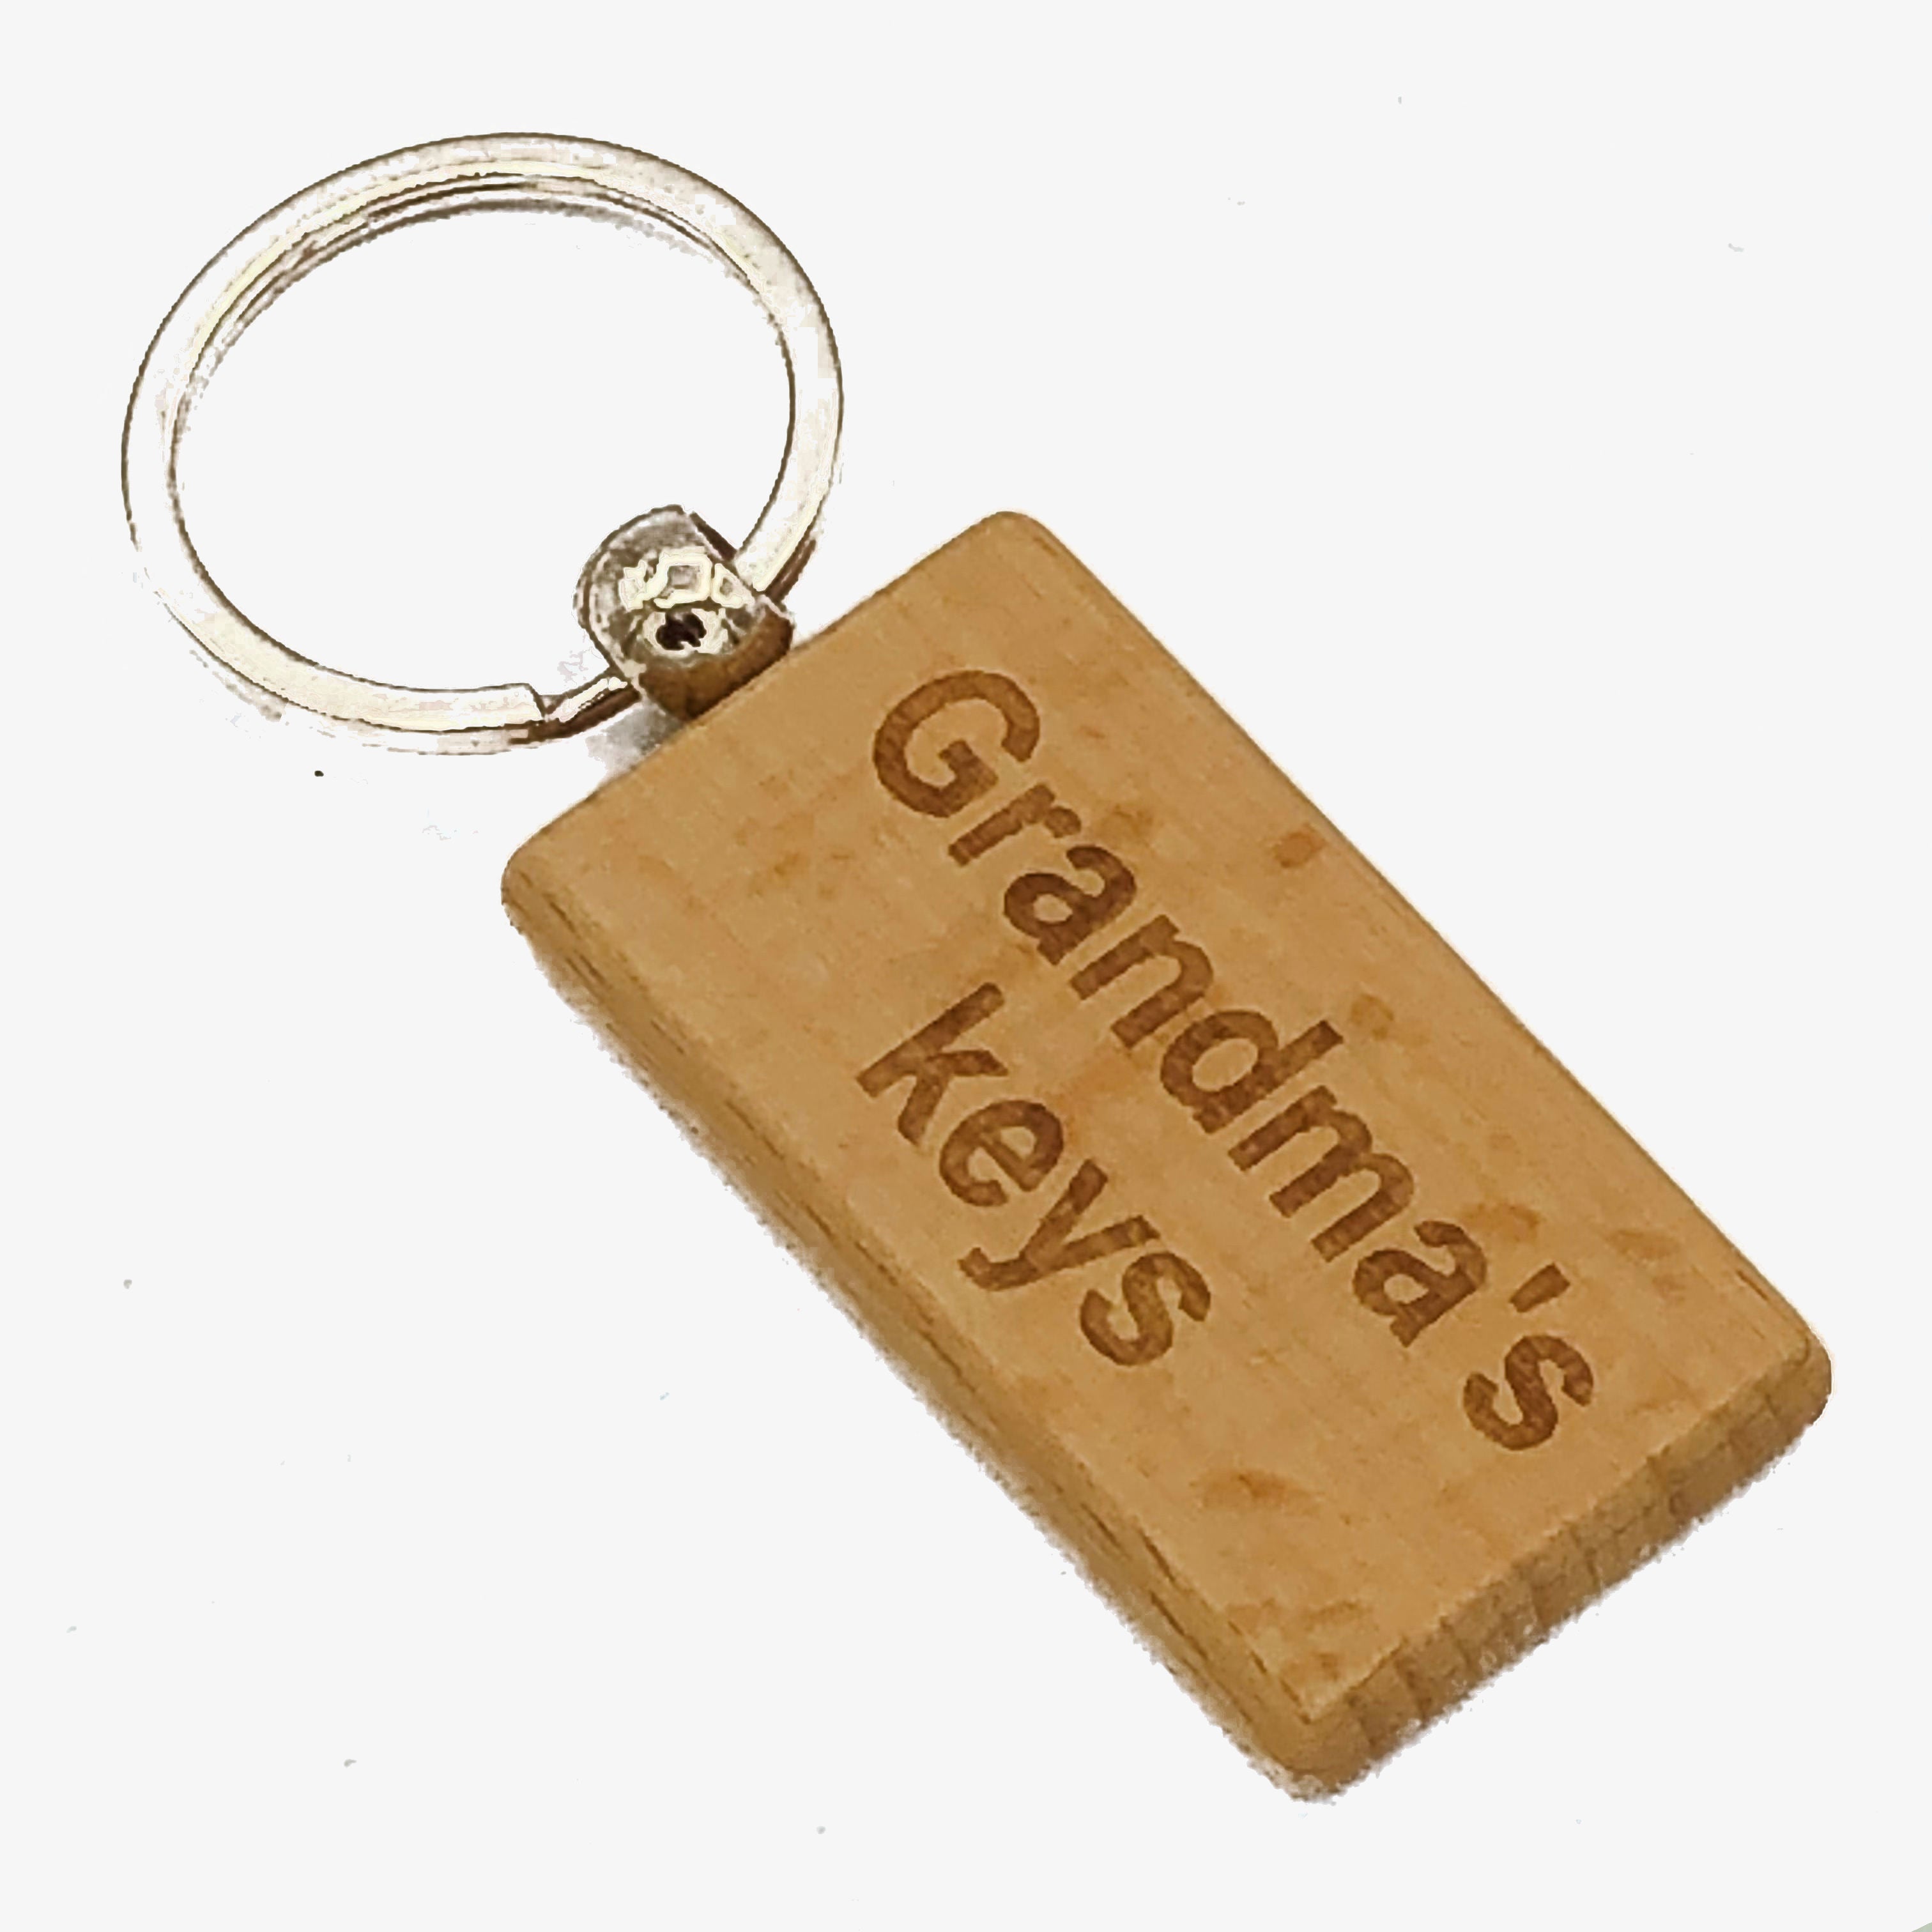 Wooden rectangular keyring gift for grandma - laser engraved - Grandma's keys